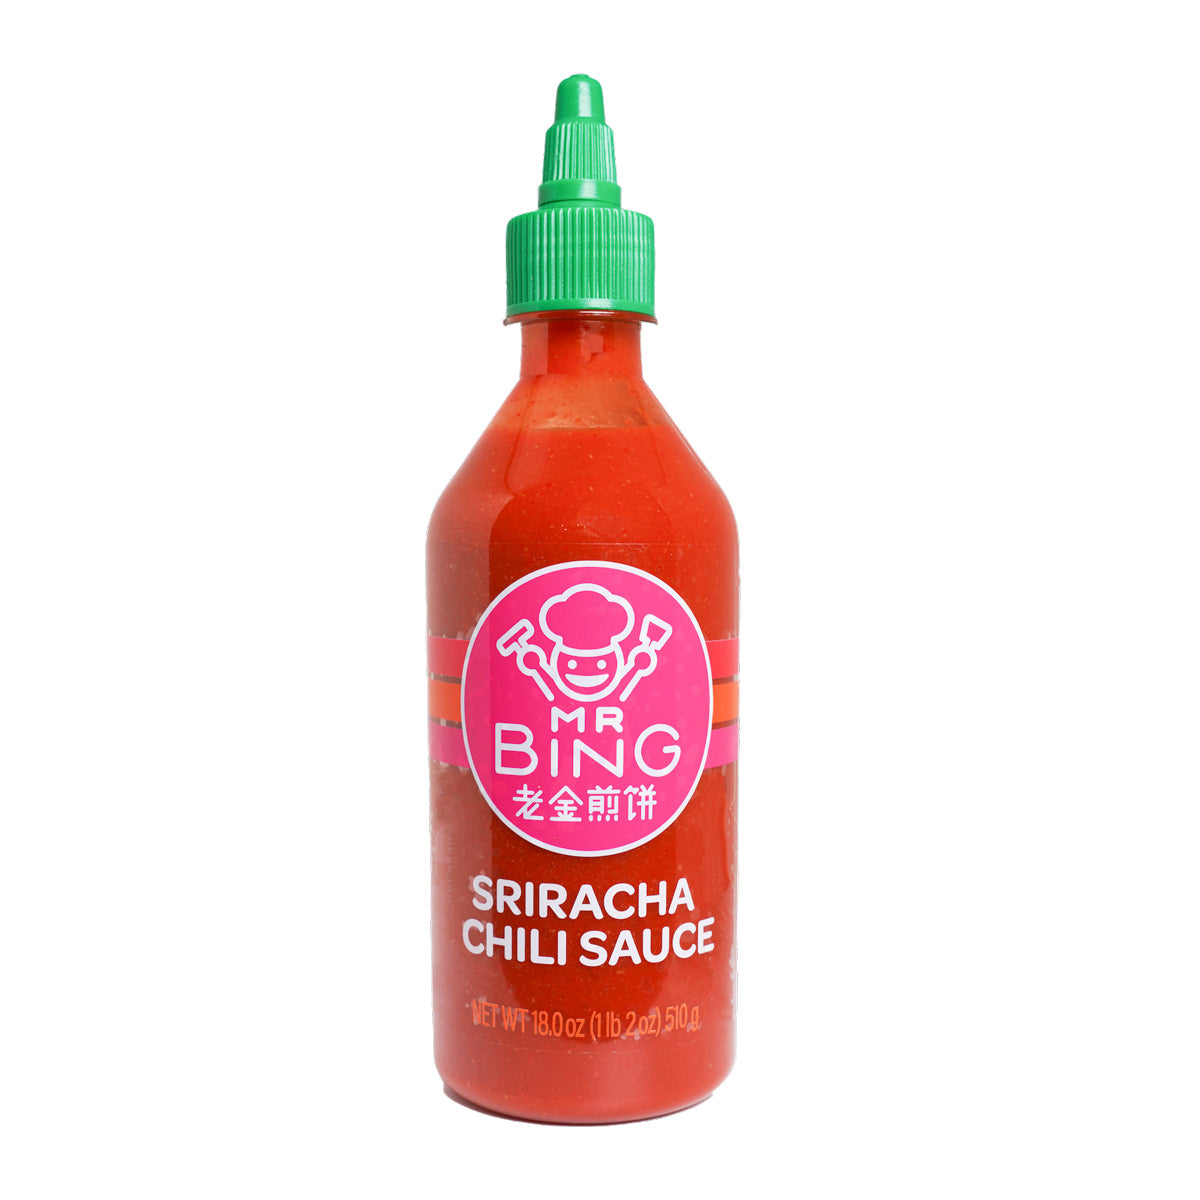 Mr. Bing Sriracha Chili Sauce 18 Oz Bottle